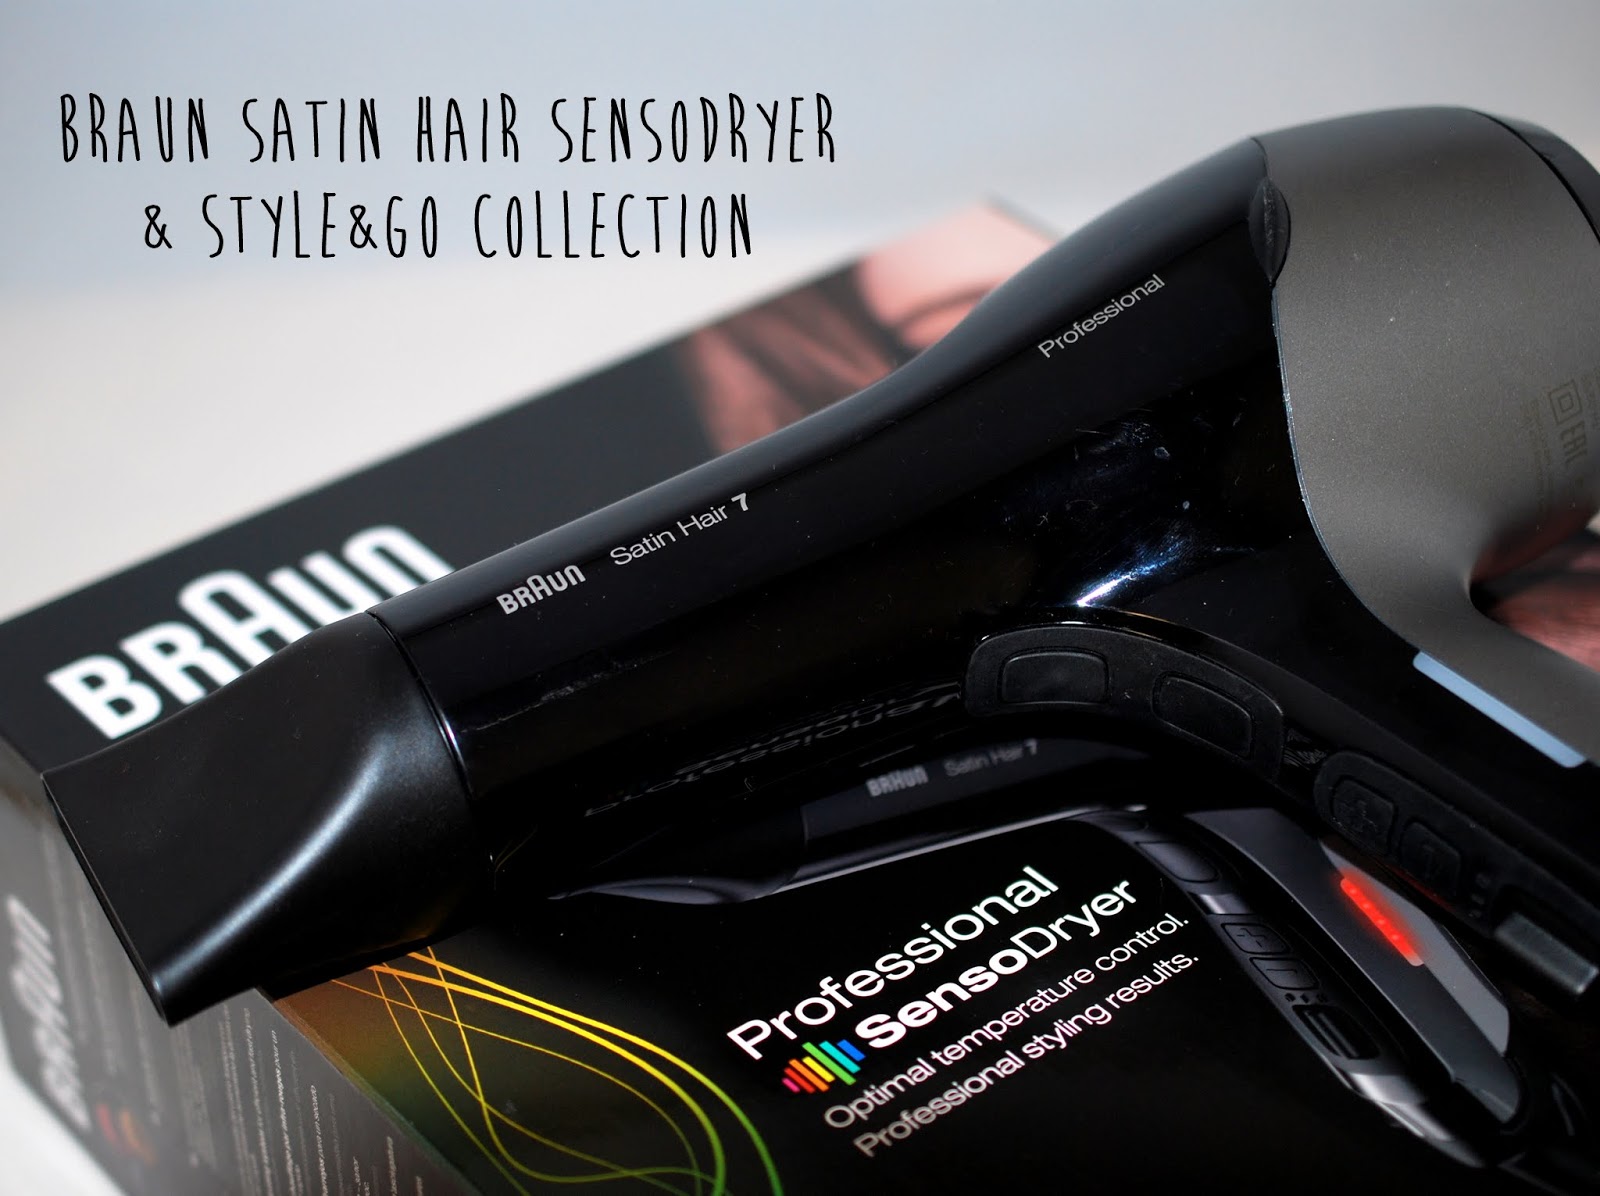 Haarpflege} Style&Go Collection und Satin 7 SensoDryer von Professional Hair - I Braun (Sponsored) sunshine need